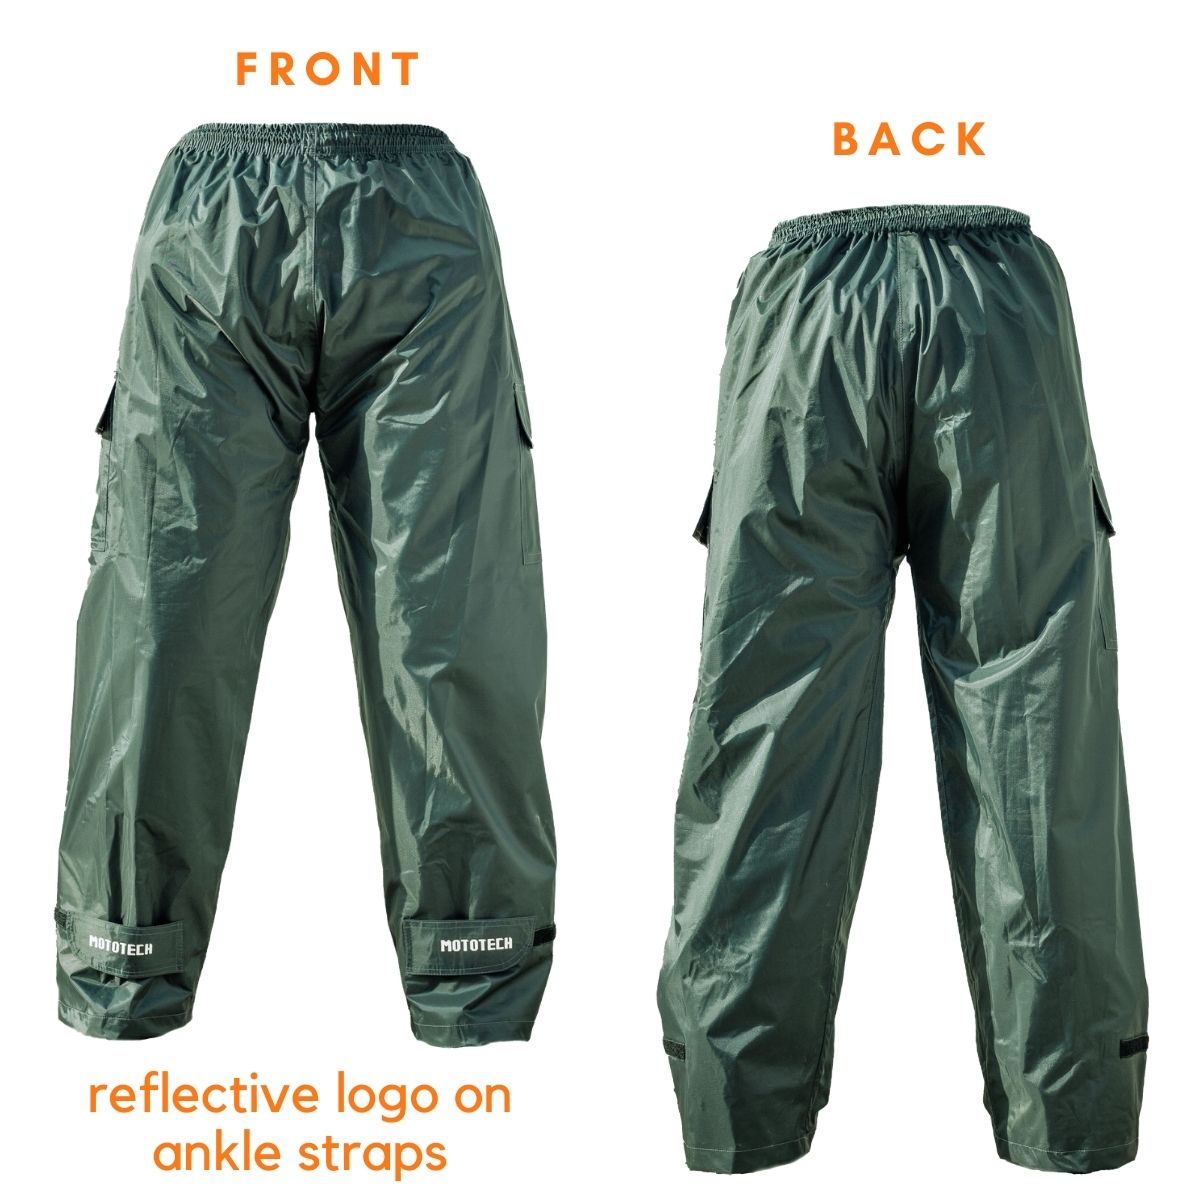 Vertice Rain Pants  UL Waterproof Breathable Hiking Pants  Zpacks